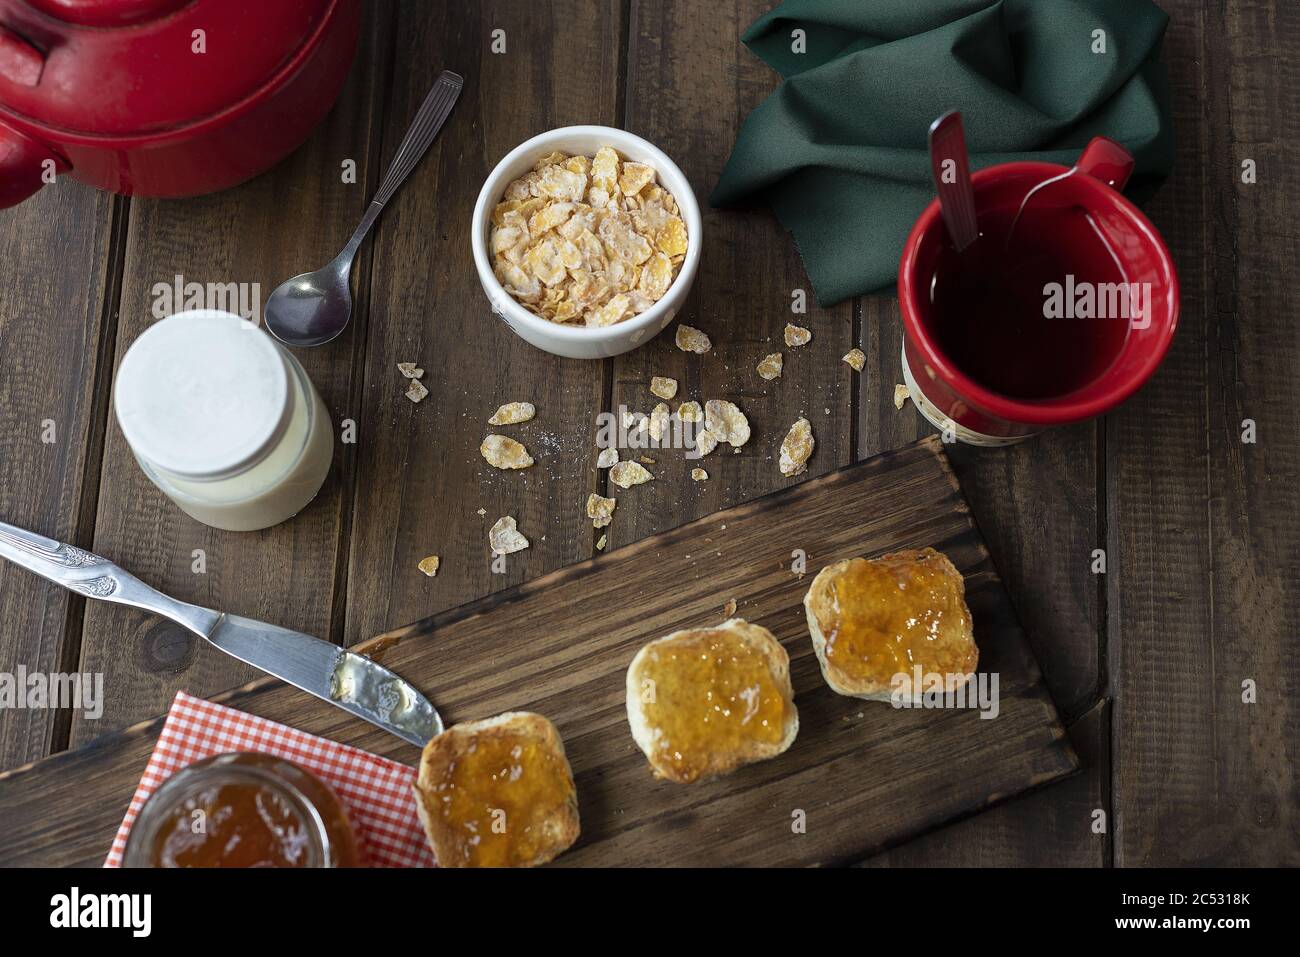 Frühstückstisch mit einer Schüssel Müsli, einer Tasse Tee und einigen Brötchen mit Marmelade Stockfoto